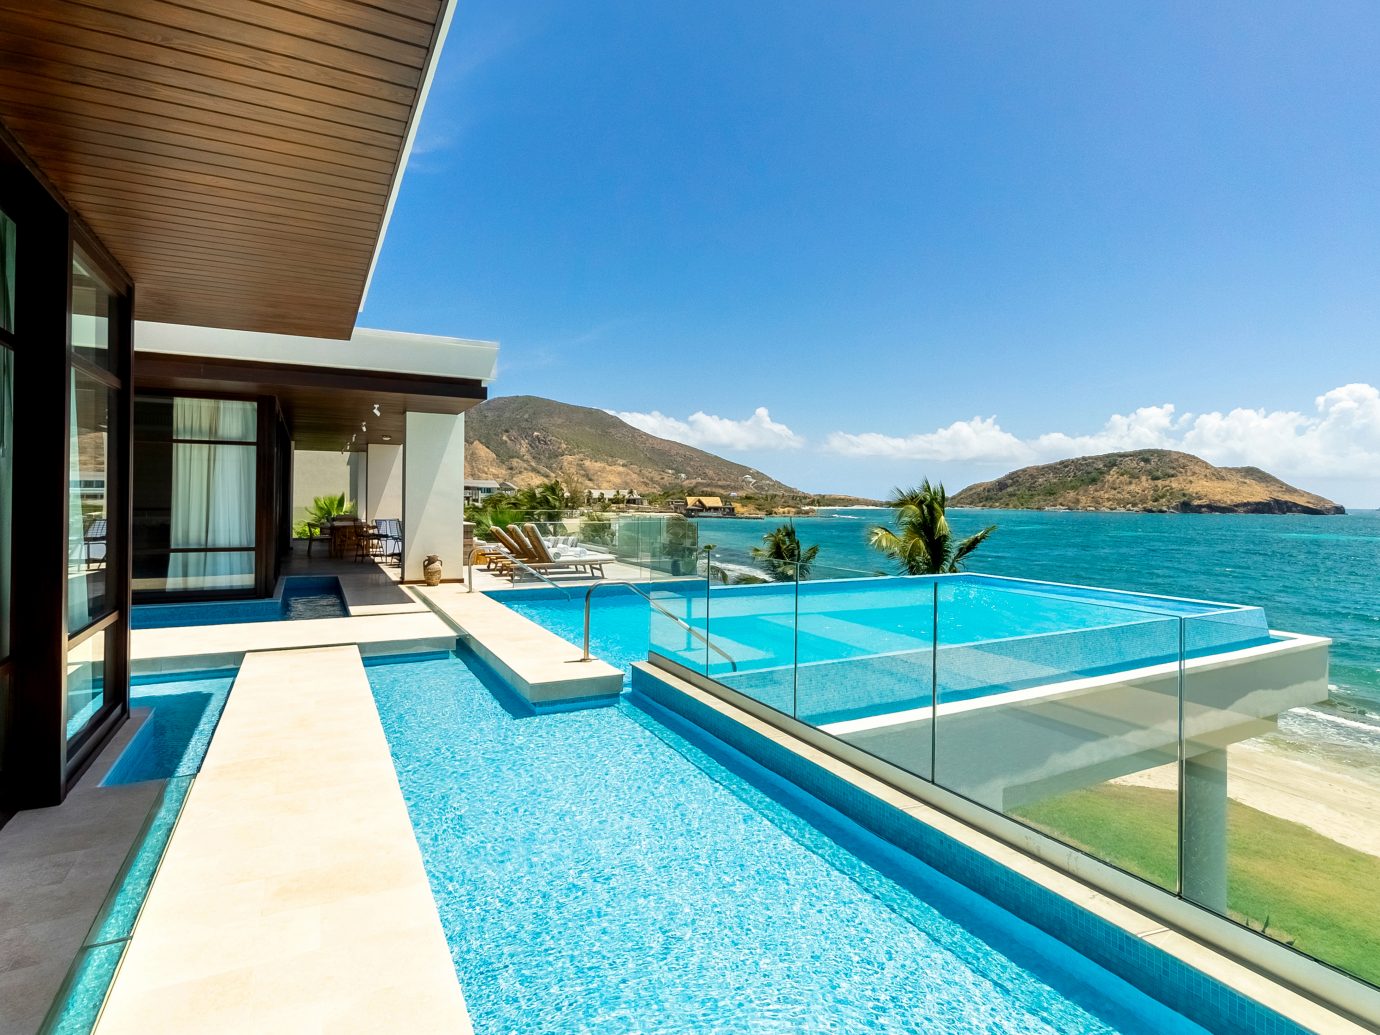 Presidential Villa pool at the Park Hyatt St. Kitts